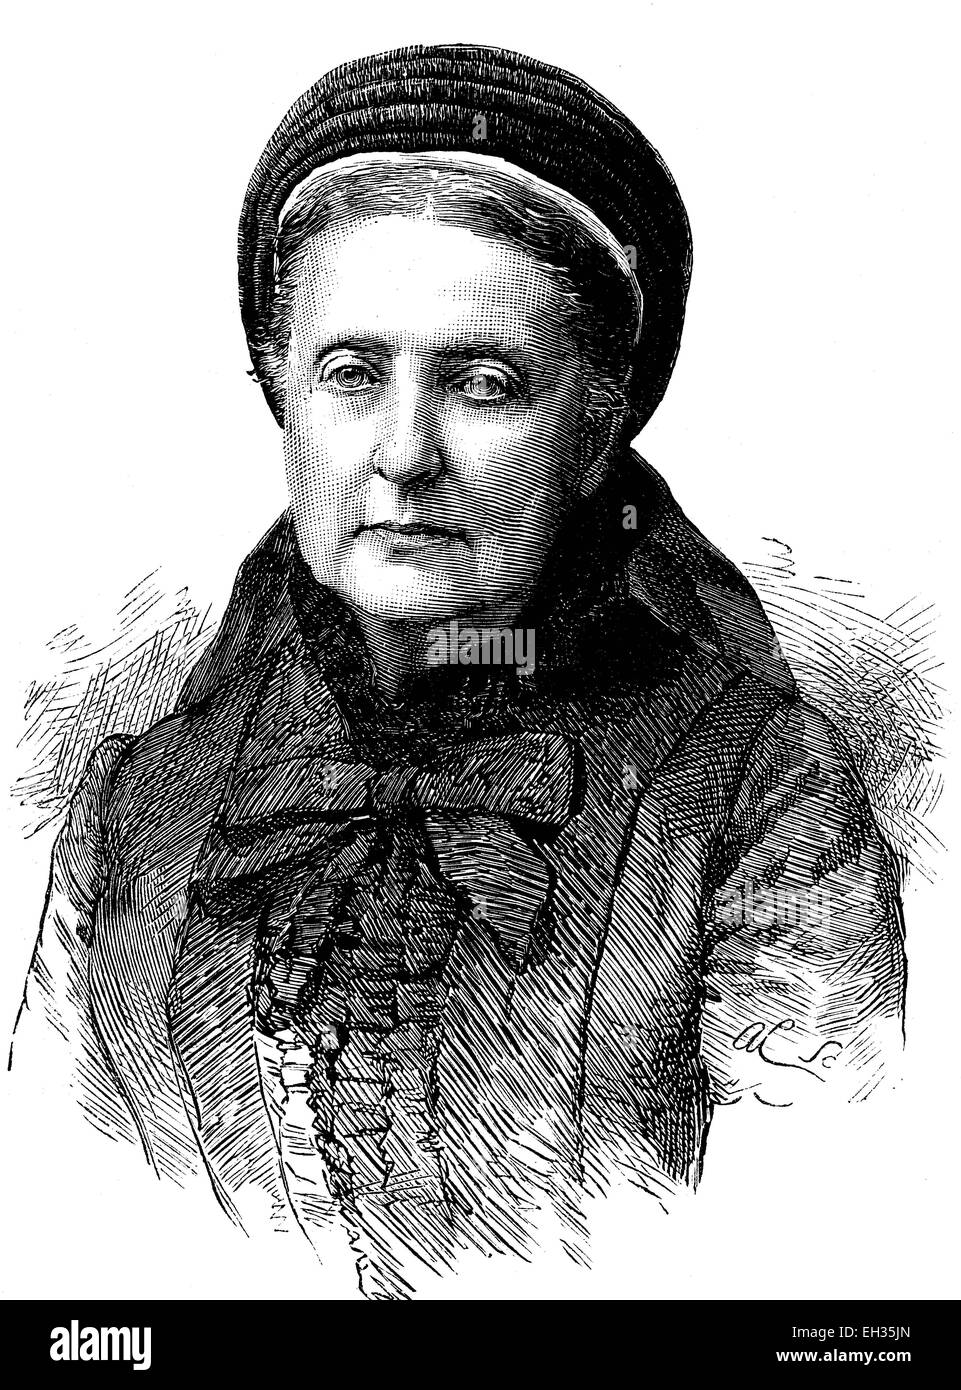 Clémentine princesse de Saxe-cobourg, Clémentine d'Orléans, 1817-1907, princesse de France, gravure sur bois, gravure historique, 1880 Banque D'Images